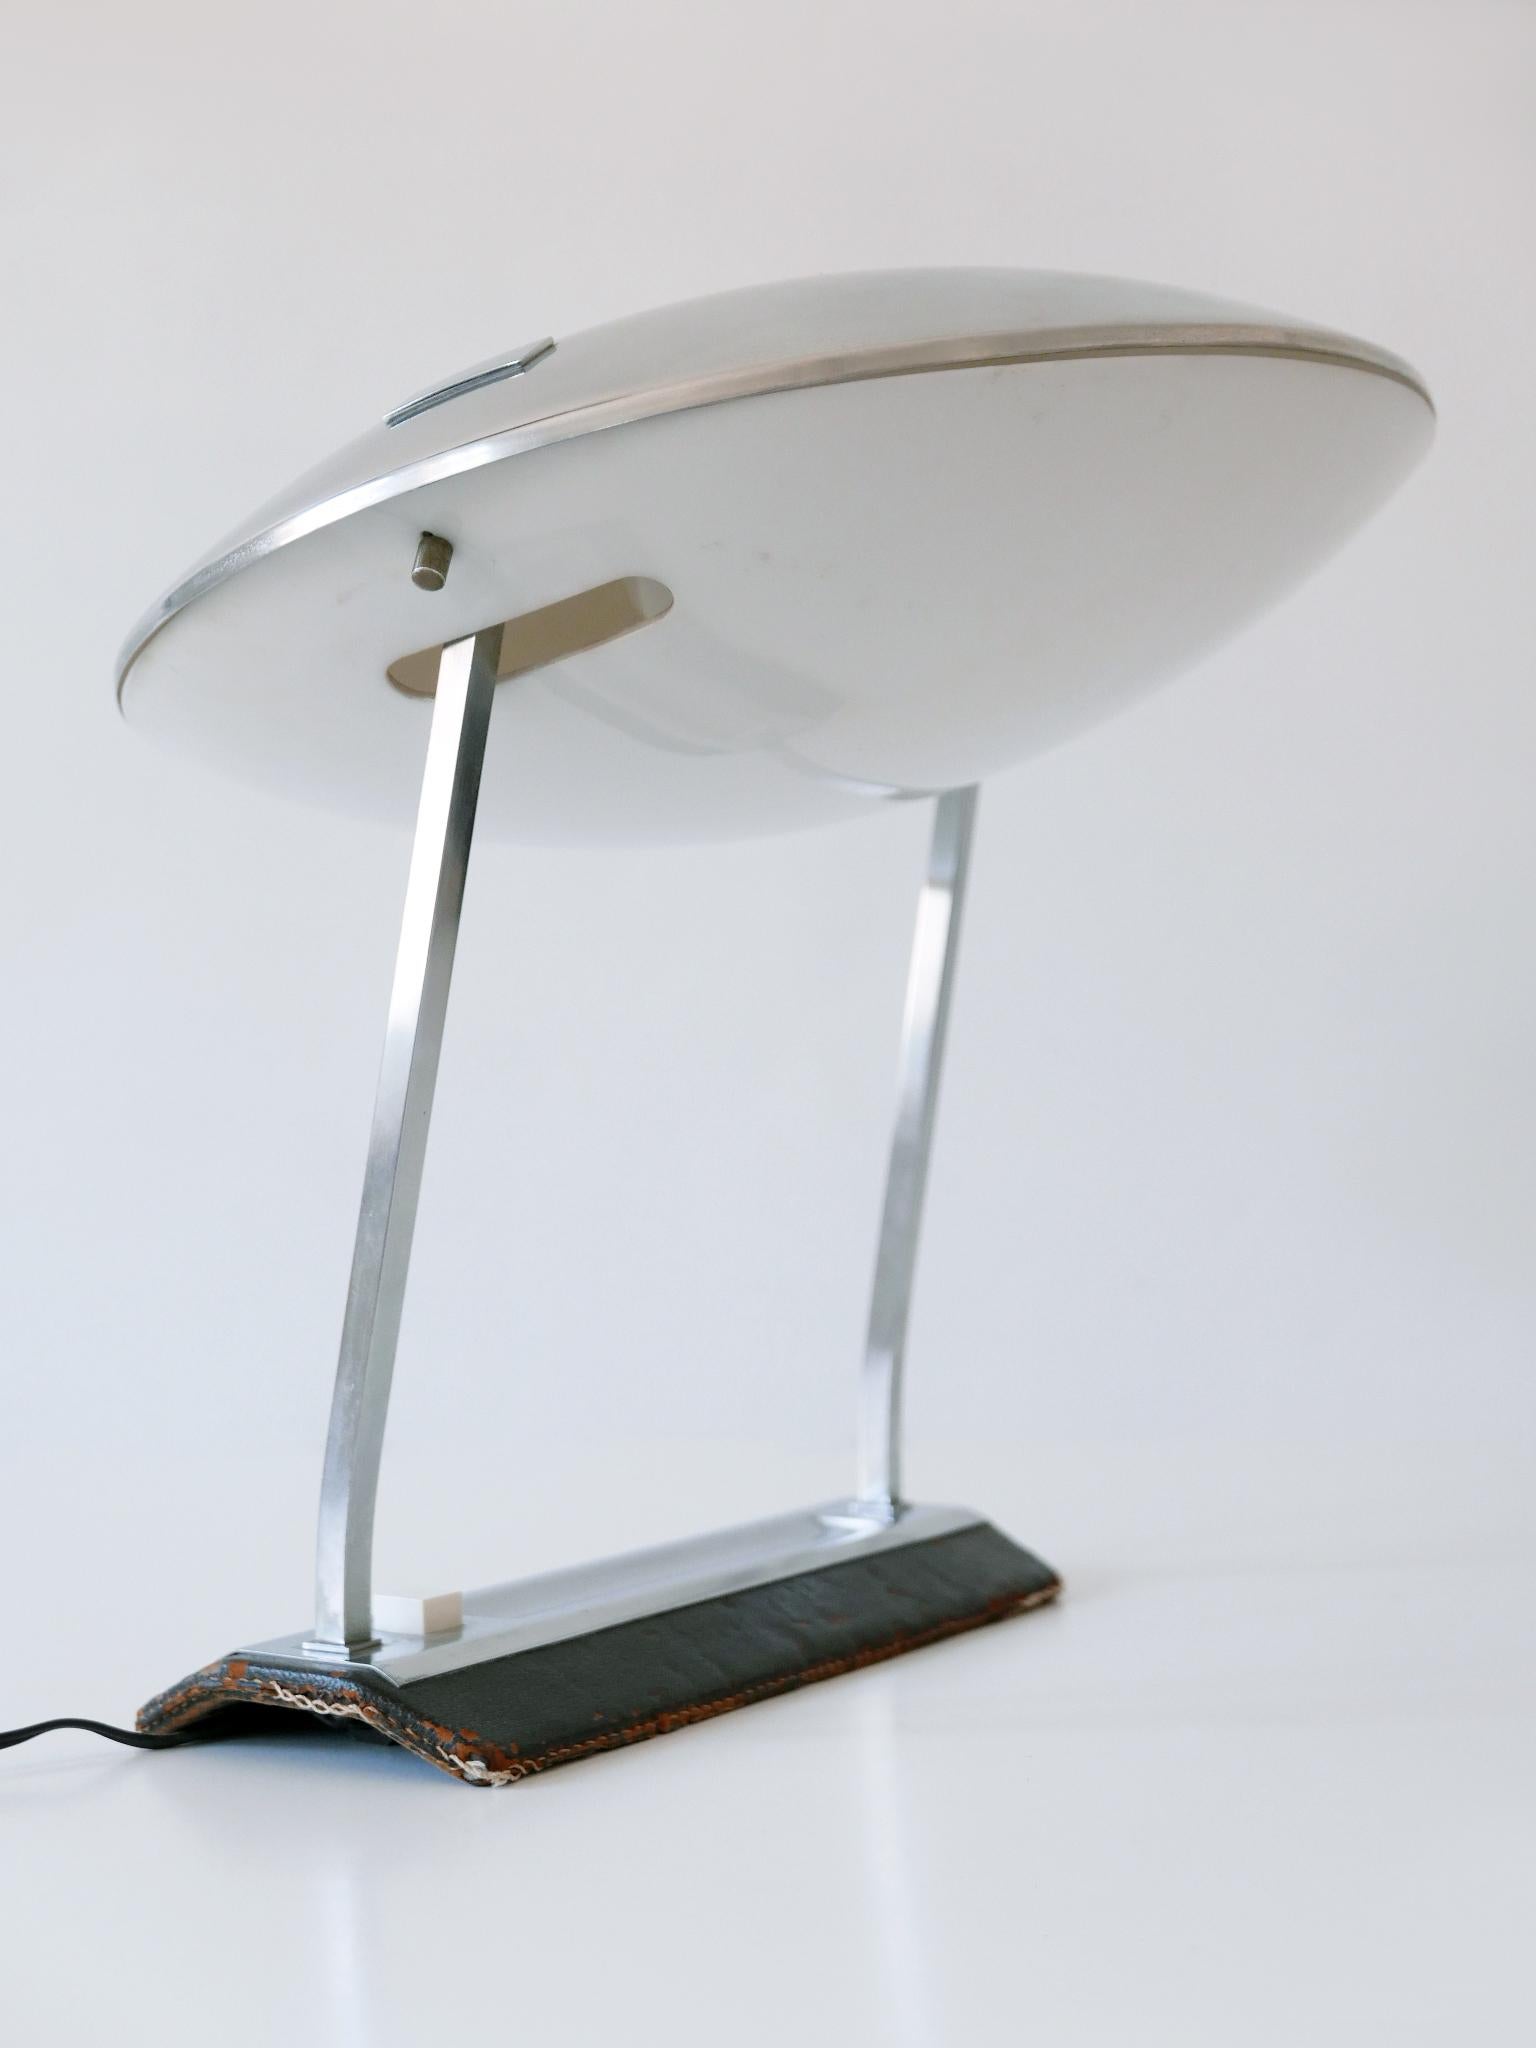 Rare Mid Century Modern Stilnovo Desk Lamp Model 8050 Metalarte 1960s For Sale 1